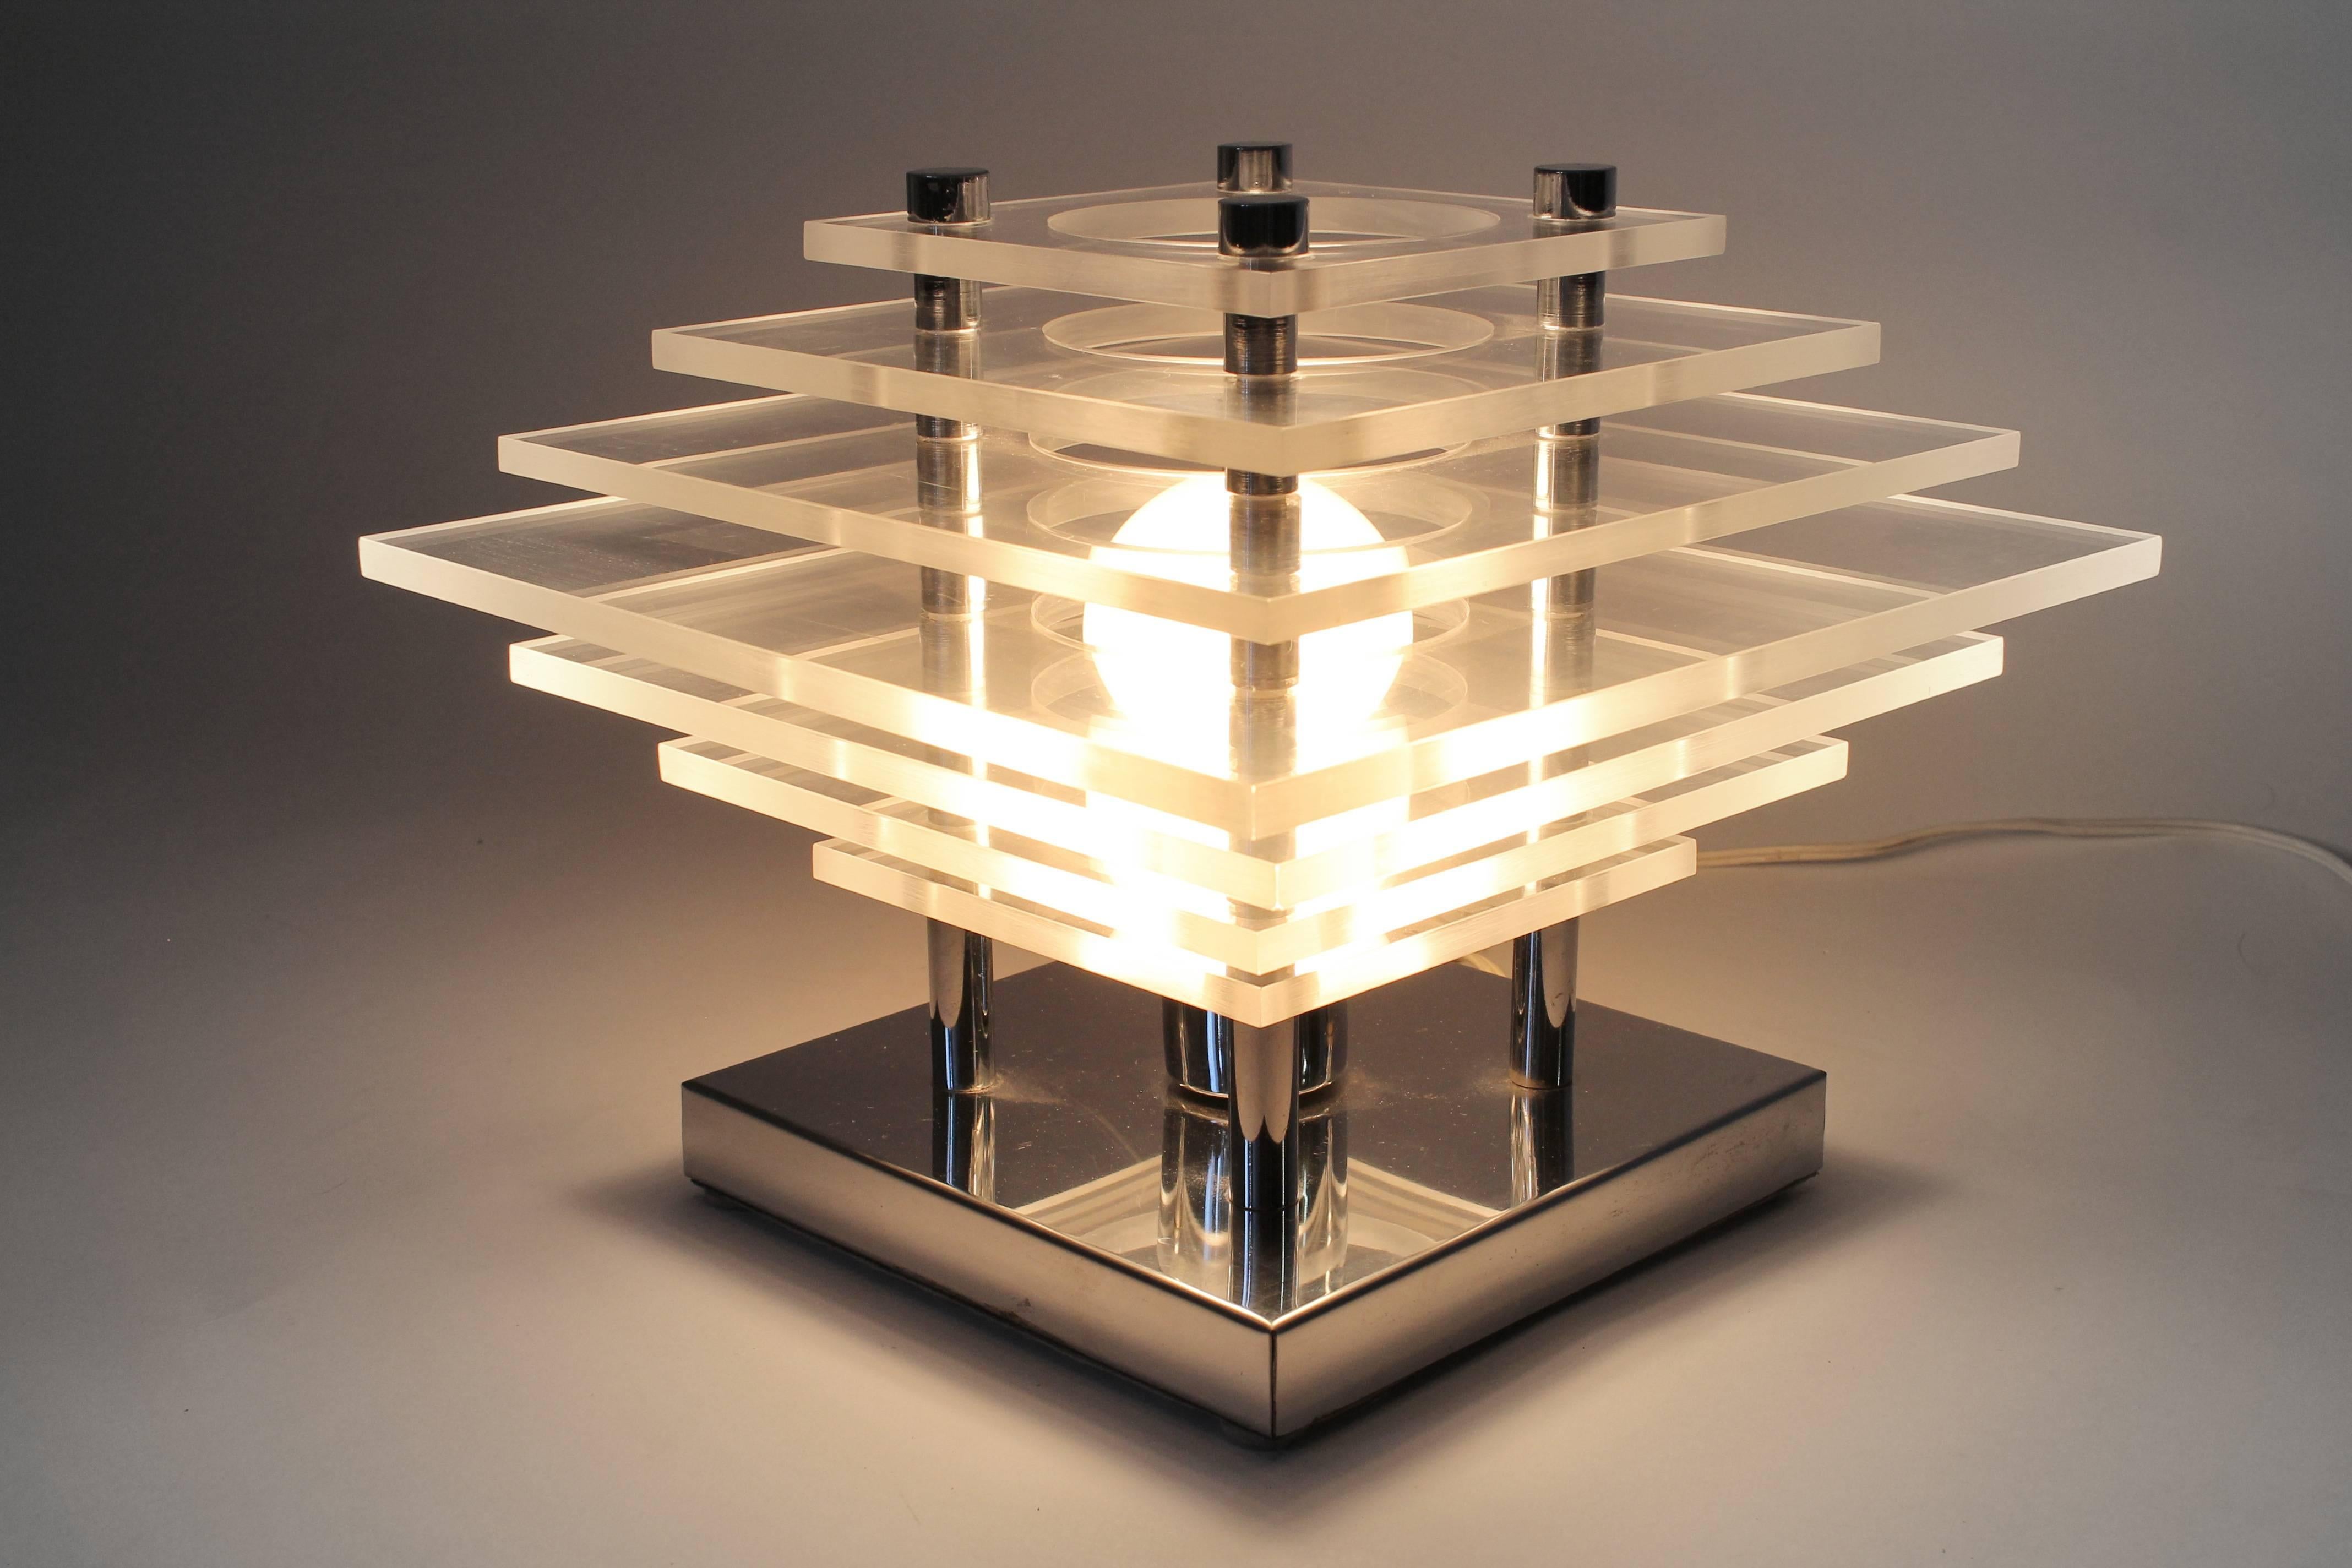 Lampe de table moderne minimaliste sculpturale en plexiglas empilé sur une base chromée. 

Le bord du plexiglas accroche les lumières de manière ludique.

Solide, bien fabriqué avec des matériaux de qualité. 

Une douille ordinaire de taille